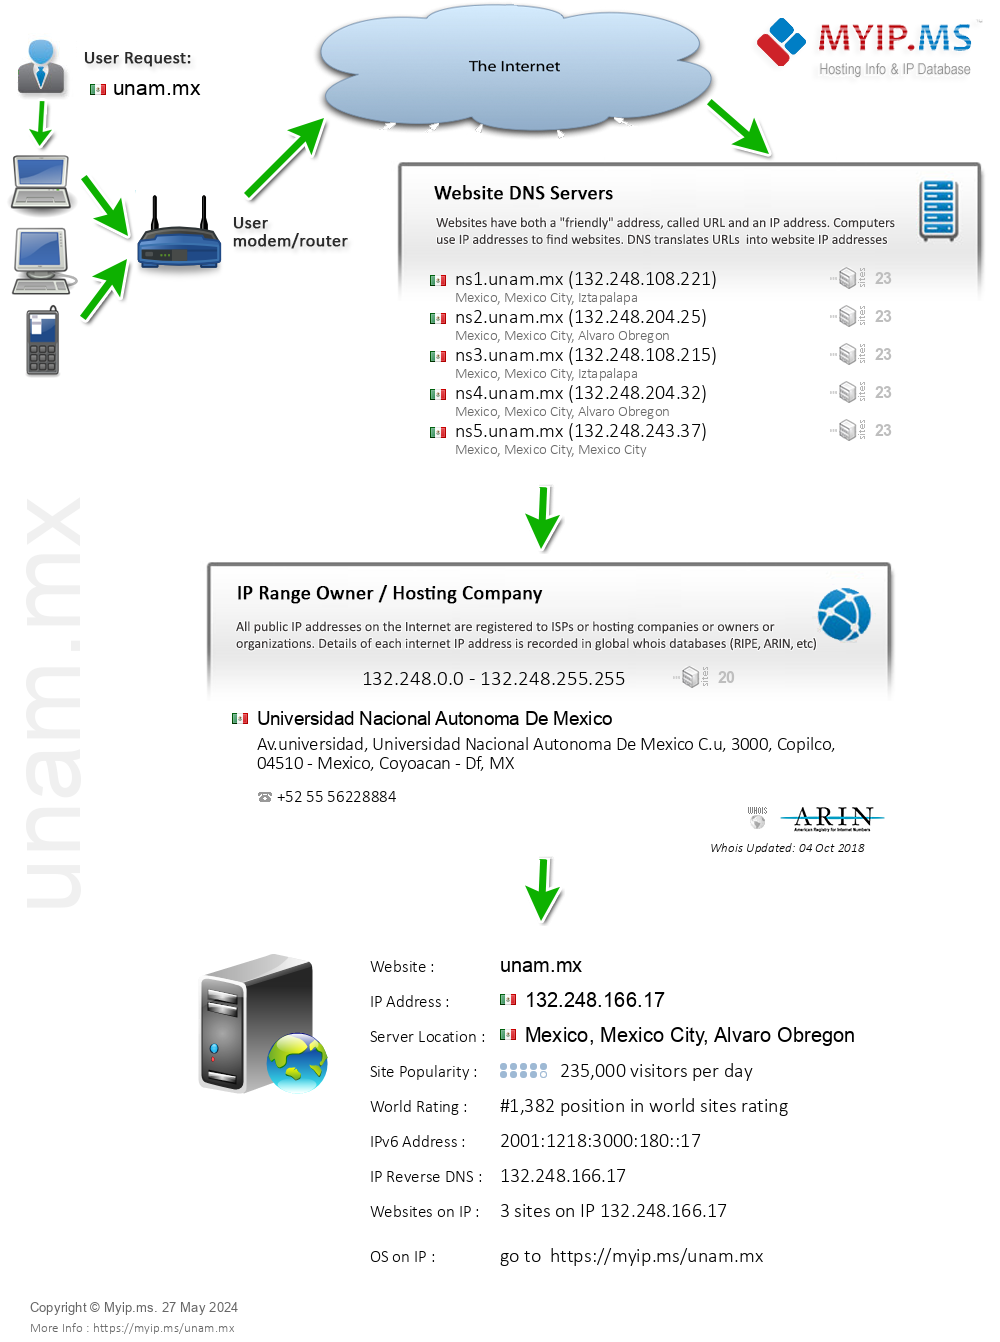 Unam.mx - Website Hosting Visual IP Diagram